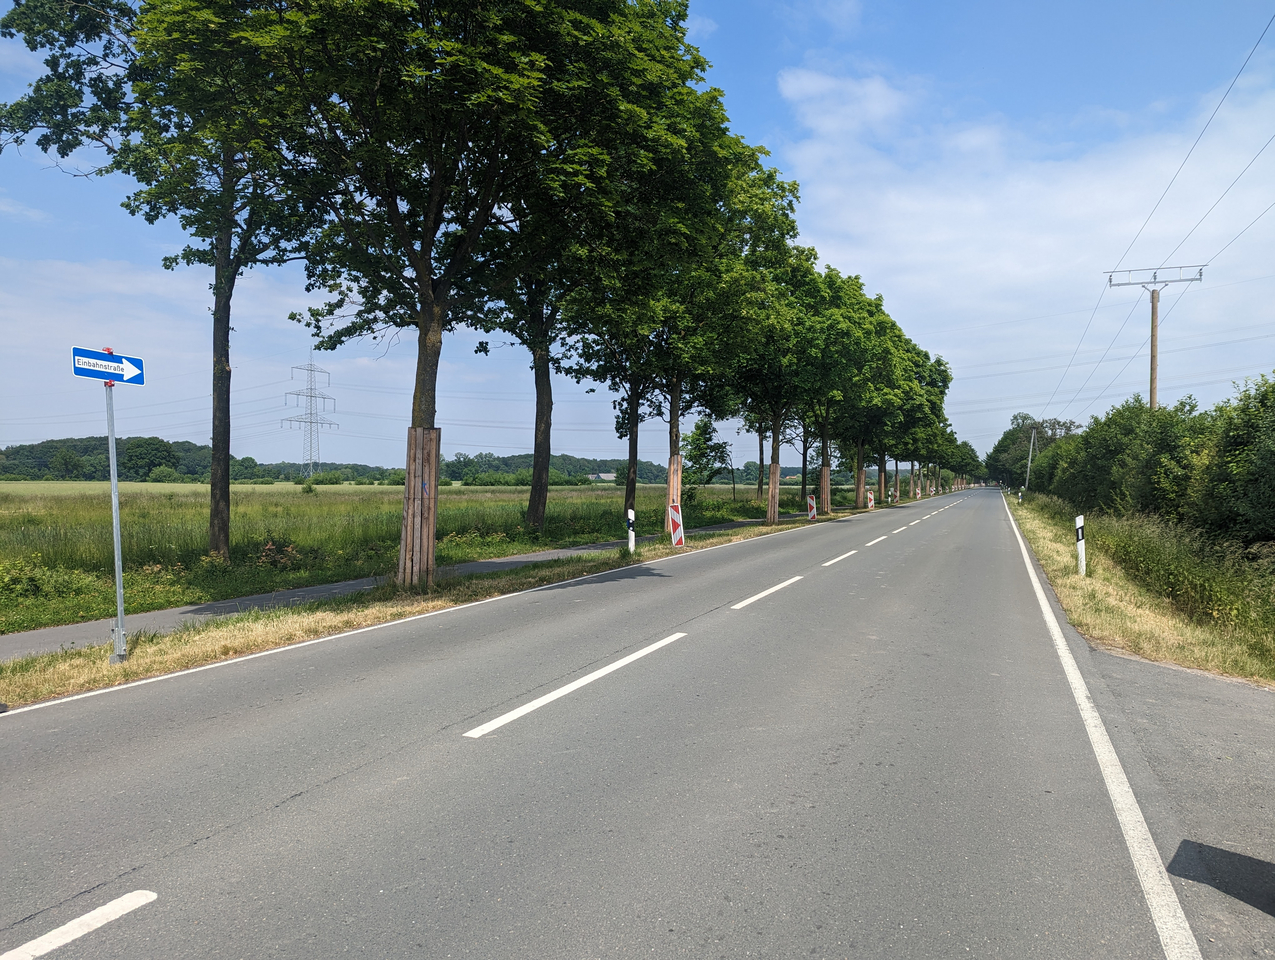 Geh- und Radweg der K51 werden ab dem 12. Juni erneuert (Bildquelle: Kreis Coesfeld/Udo Tegeler). 